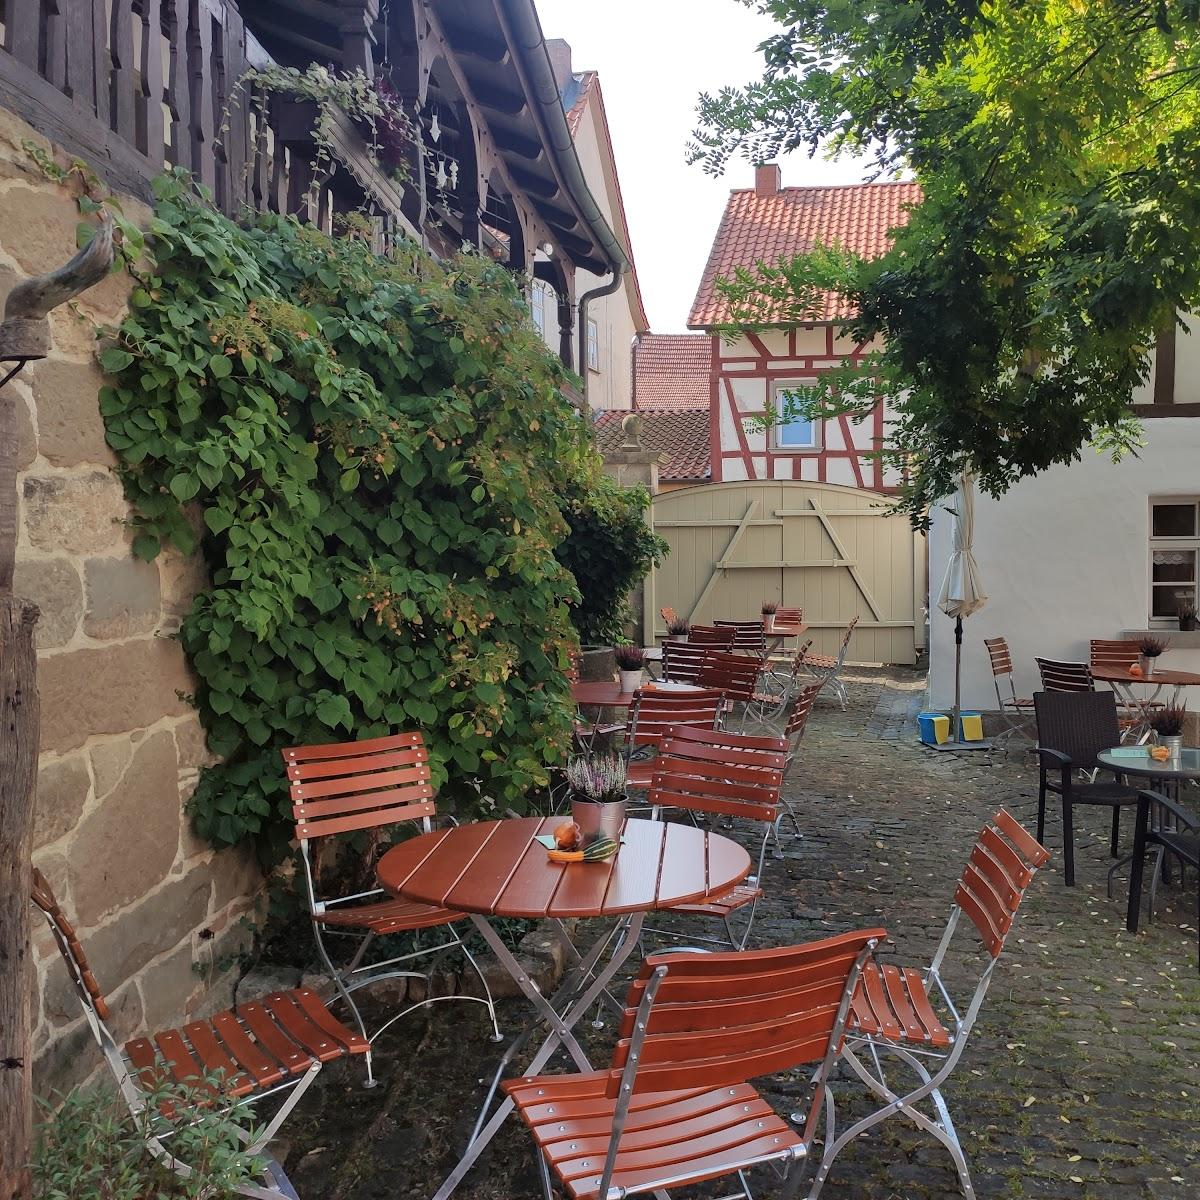 Restaurant "Pilgerstube Altenmünster" in Stadtlauringen